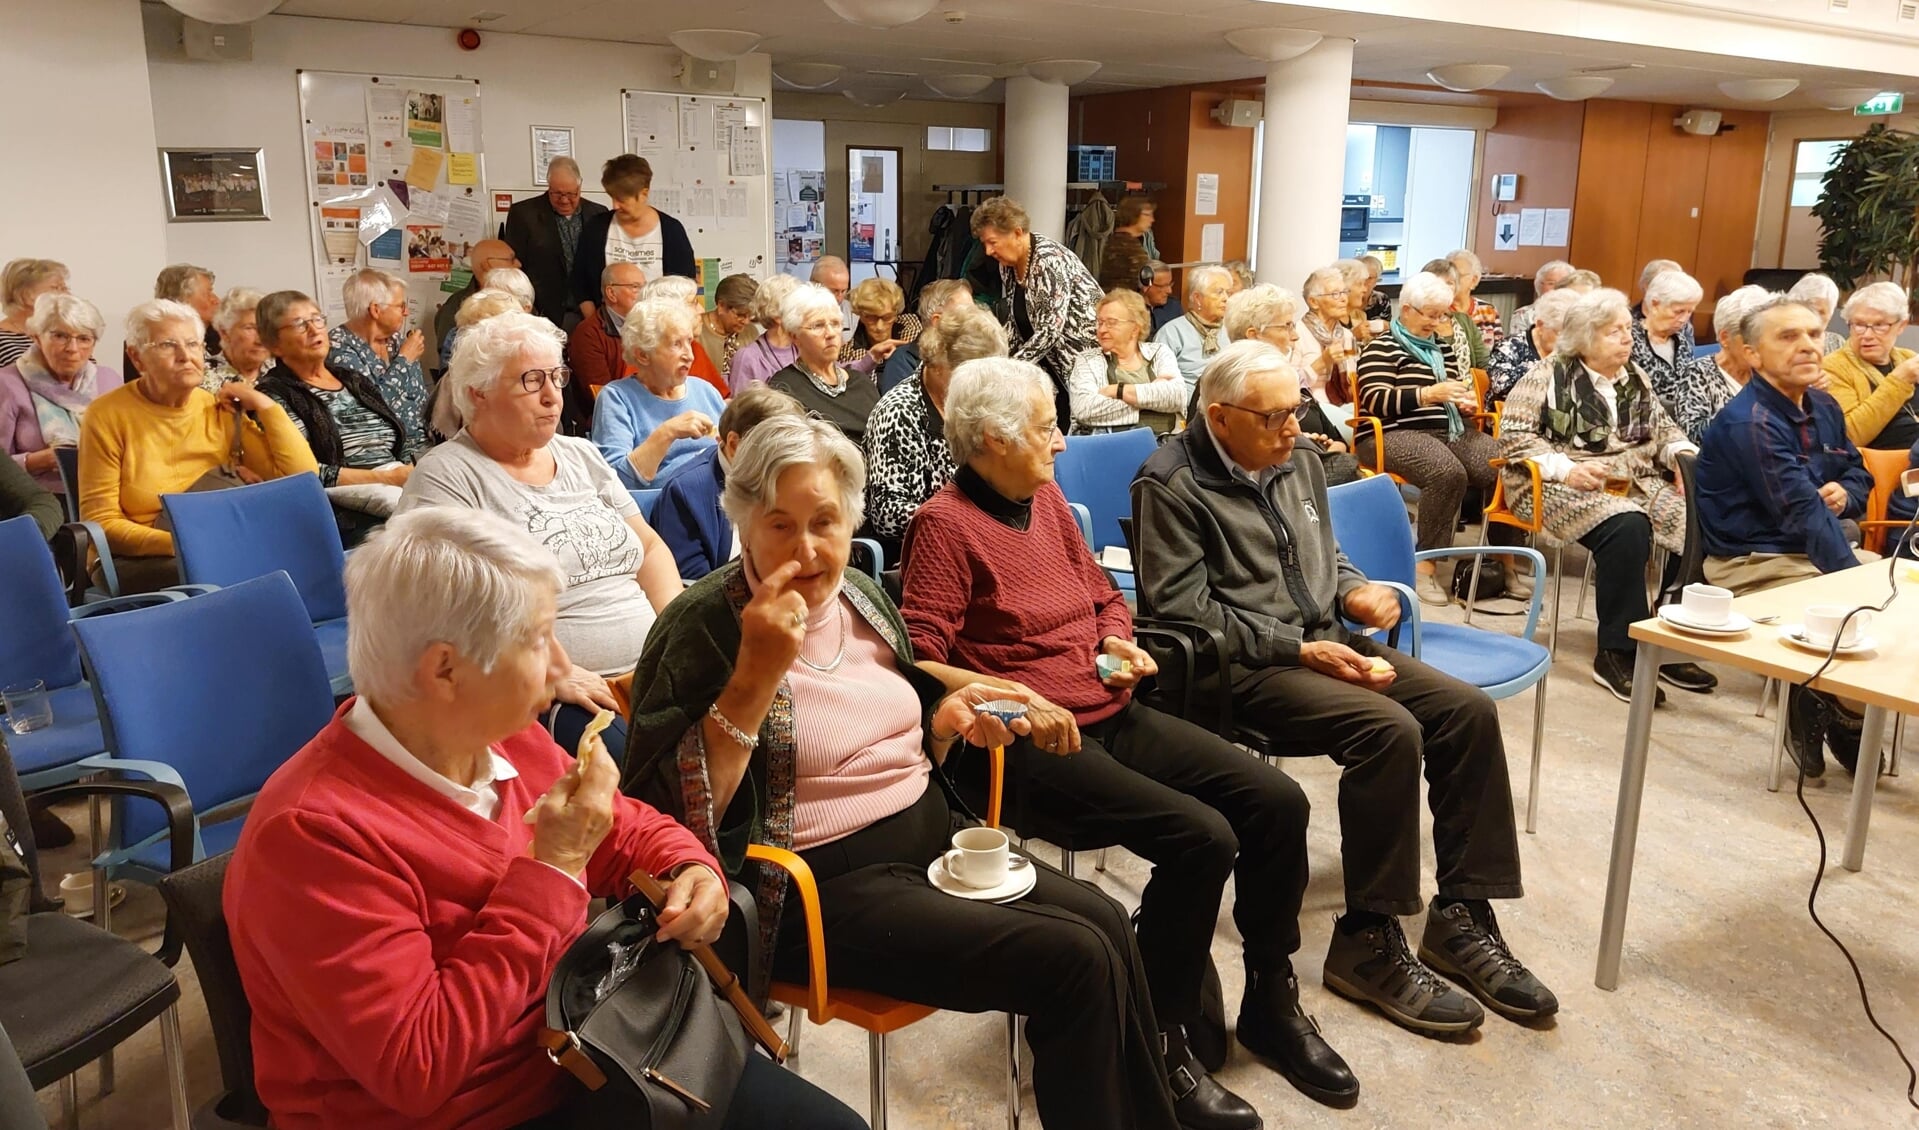 De leden van Senioren Belangen tijdens de pauze van de filmvoorstelling “Pavarotti”